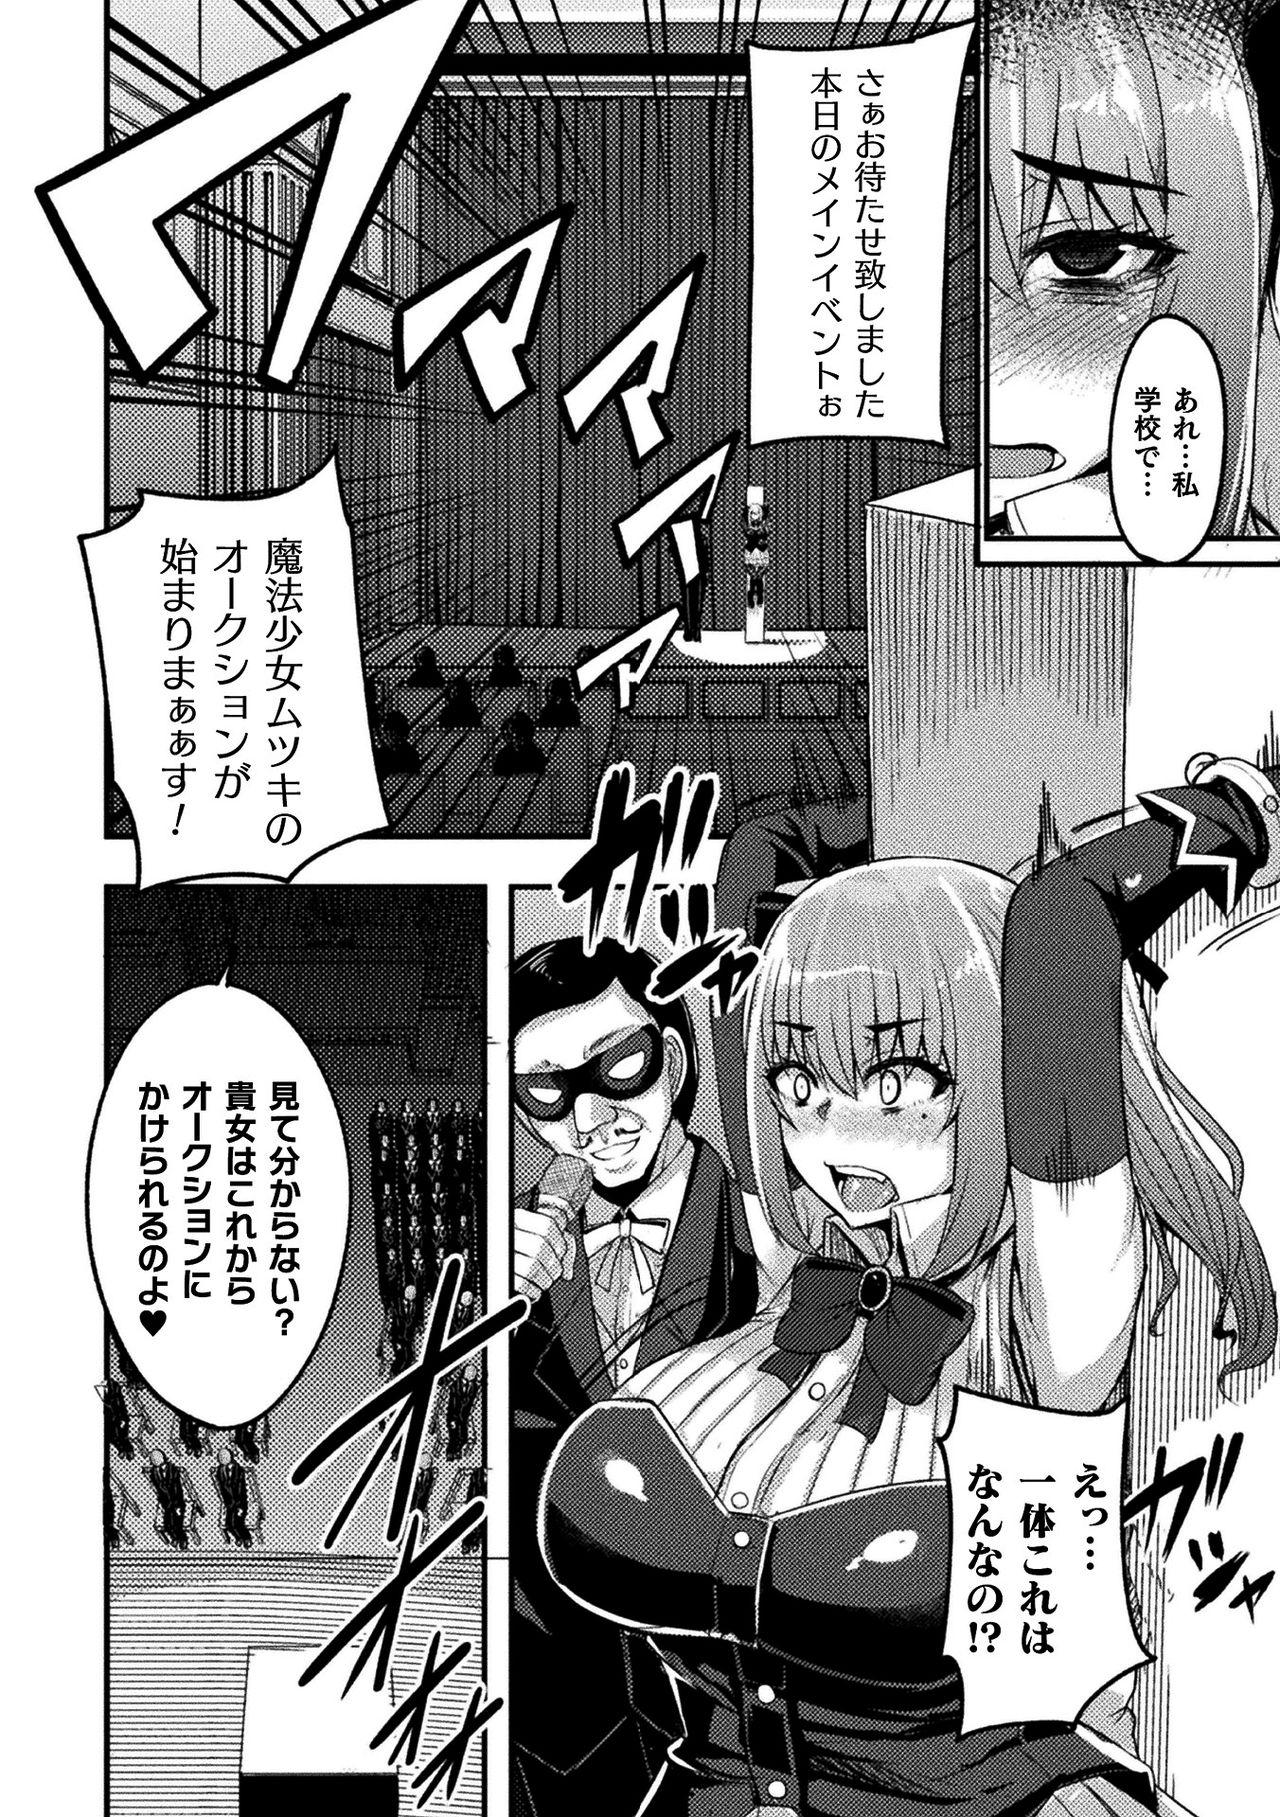 Teenage 2D Comic Magazine Mahou Shoujo Seidorei Auction e Youkoso! Vol. 2 Couple Sex - Page 8